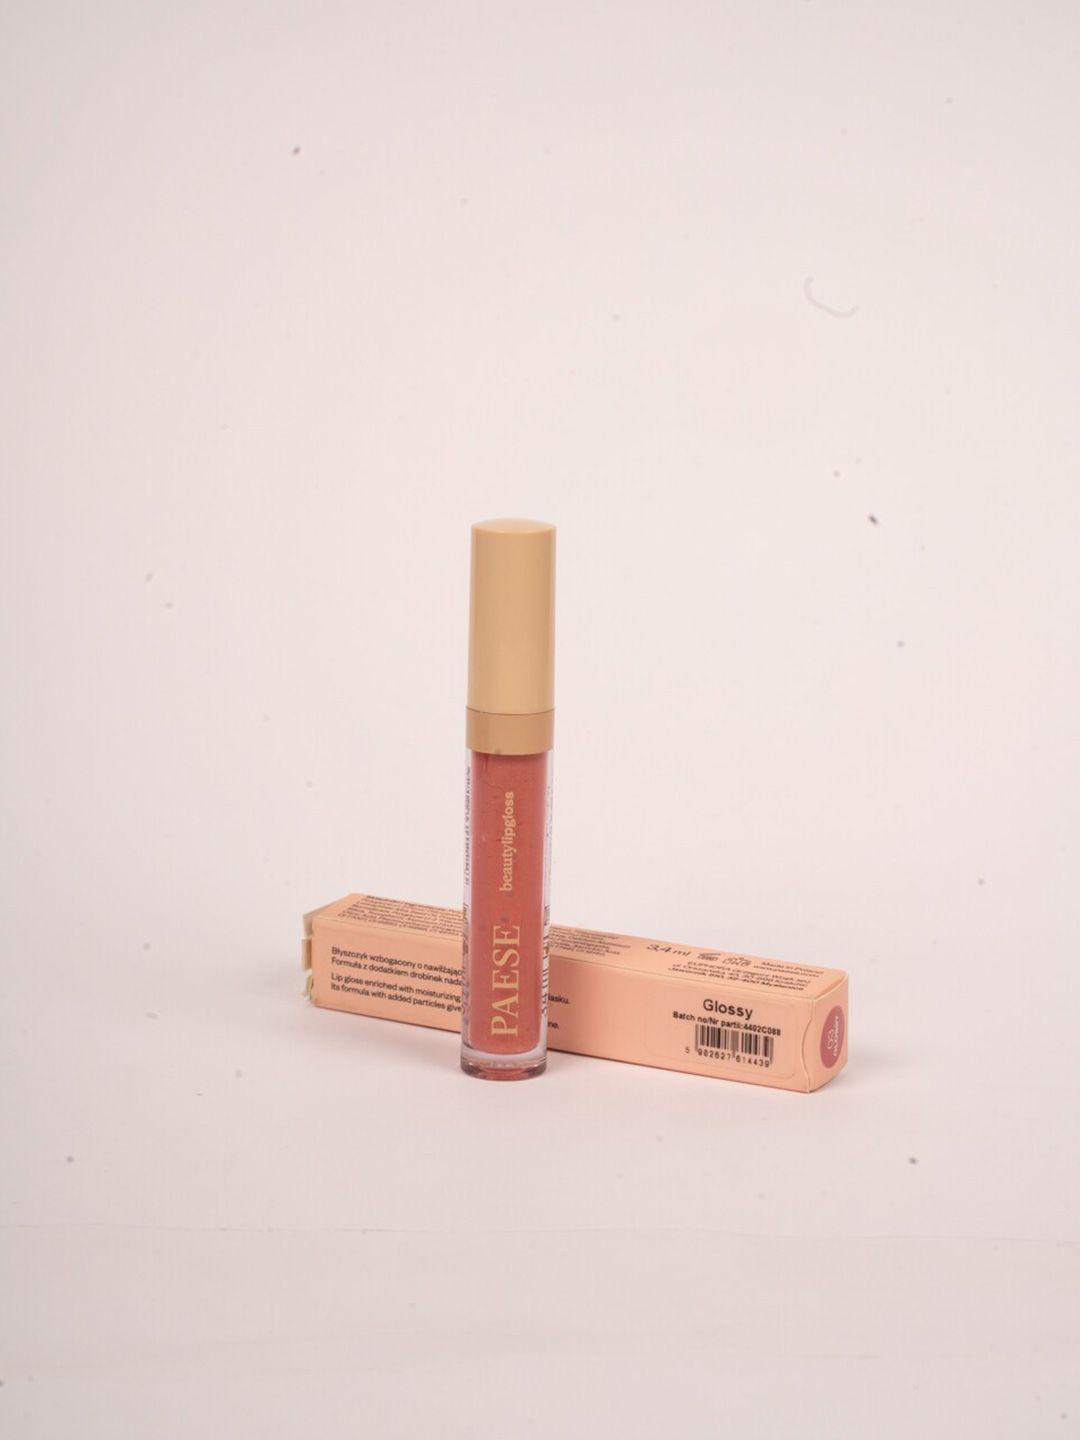 paese-cosmetics-beauty-lip-gloss-3.4-ml---glassy-1